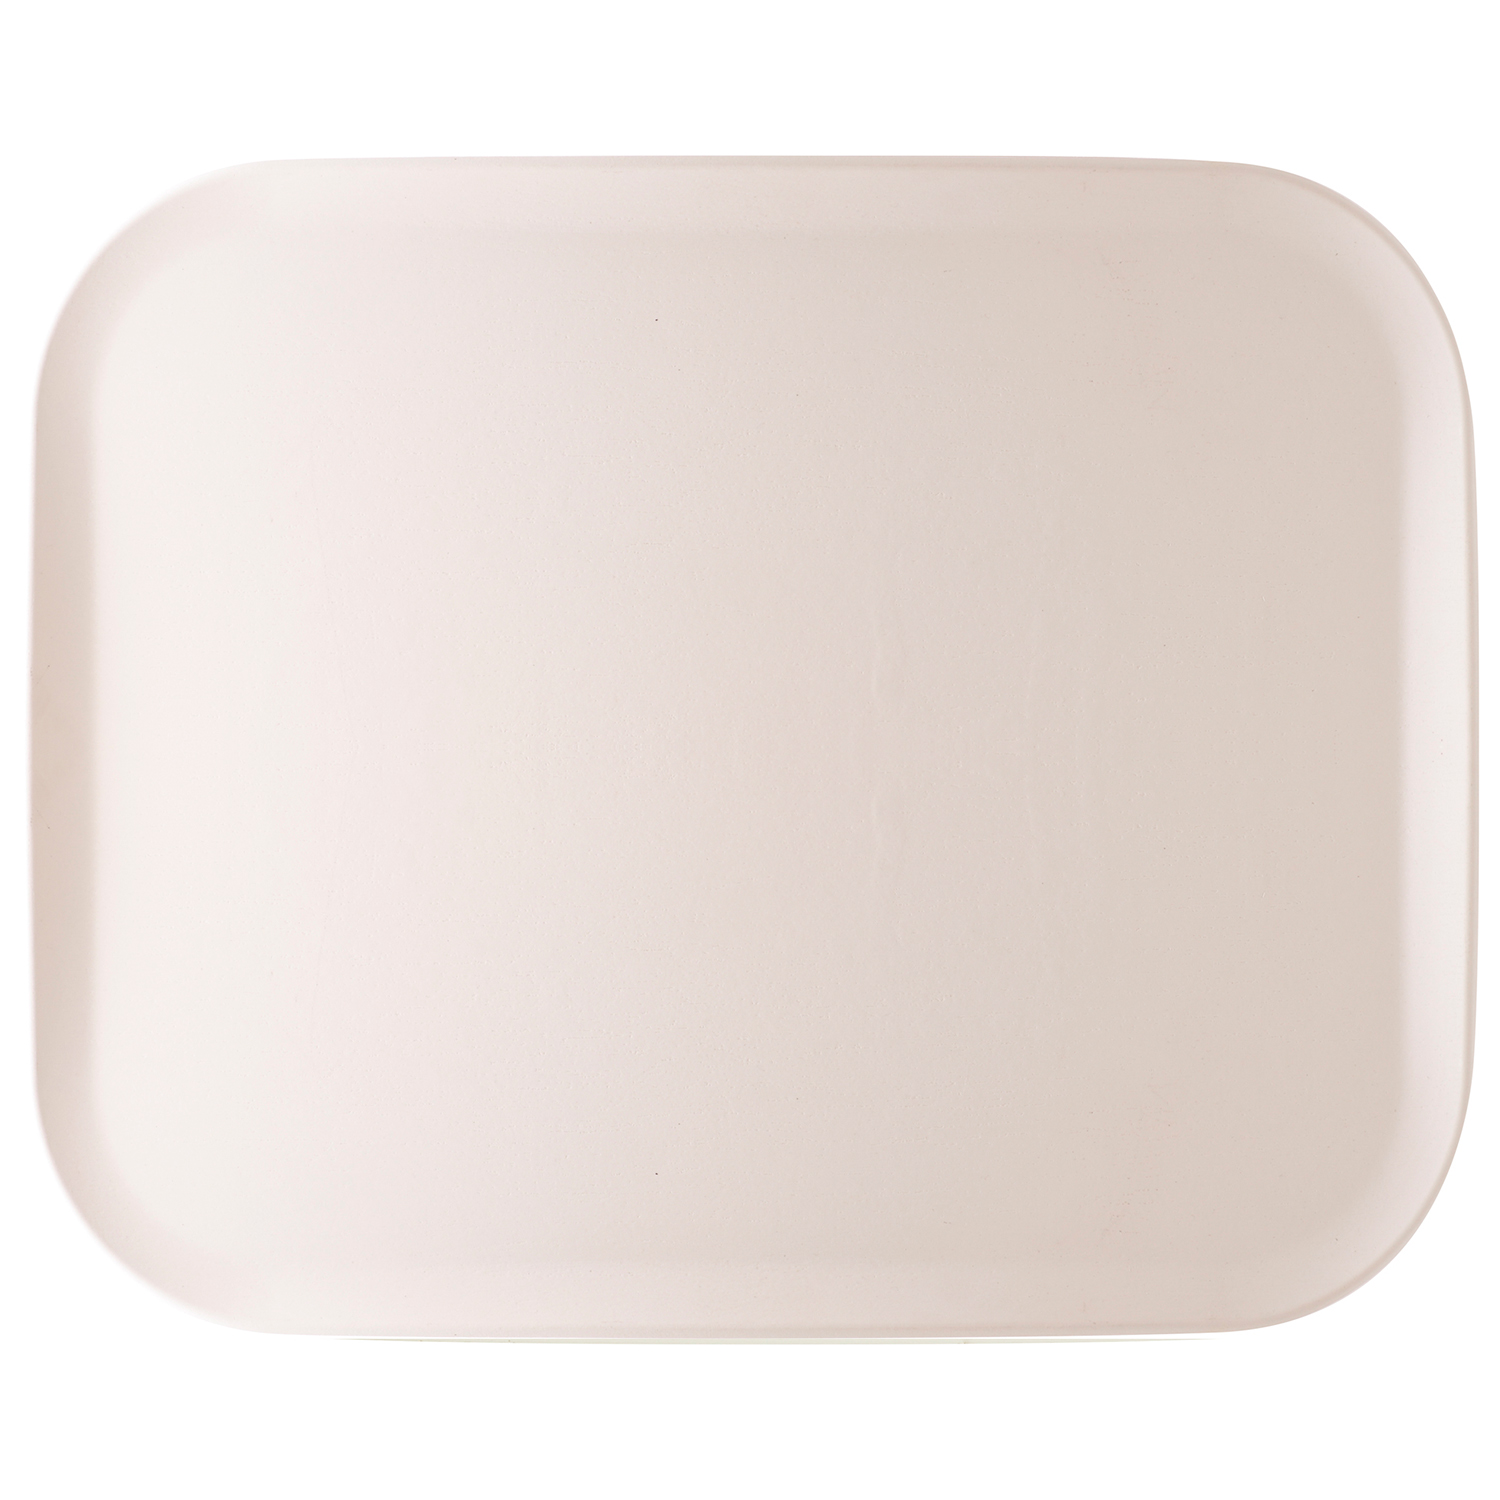 Tablett Grain matt 32,5 x 26,5 cm, Pearl White 